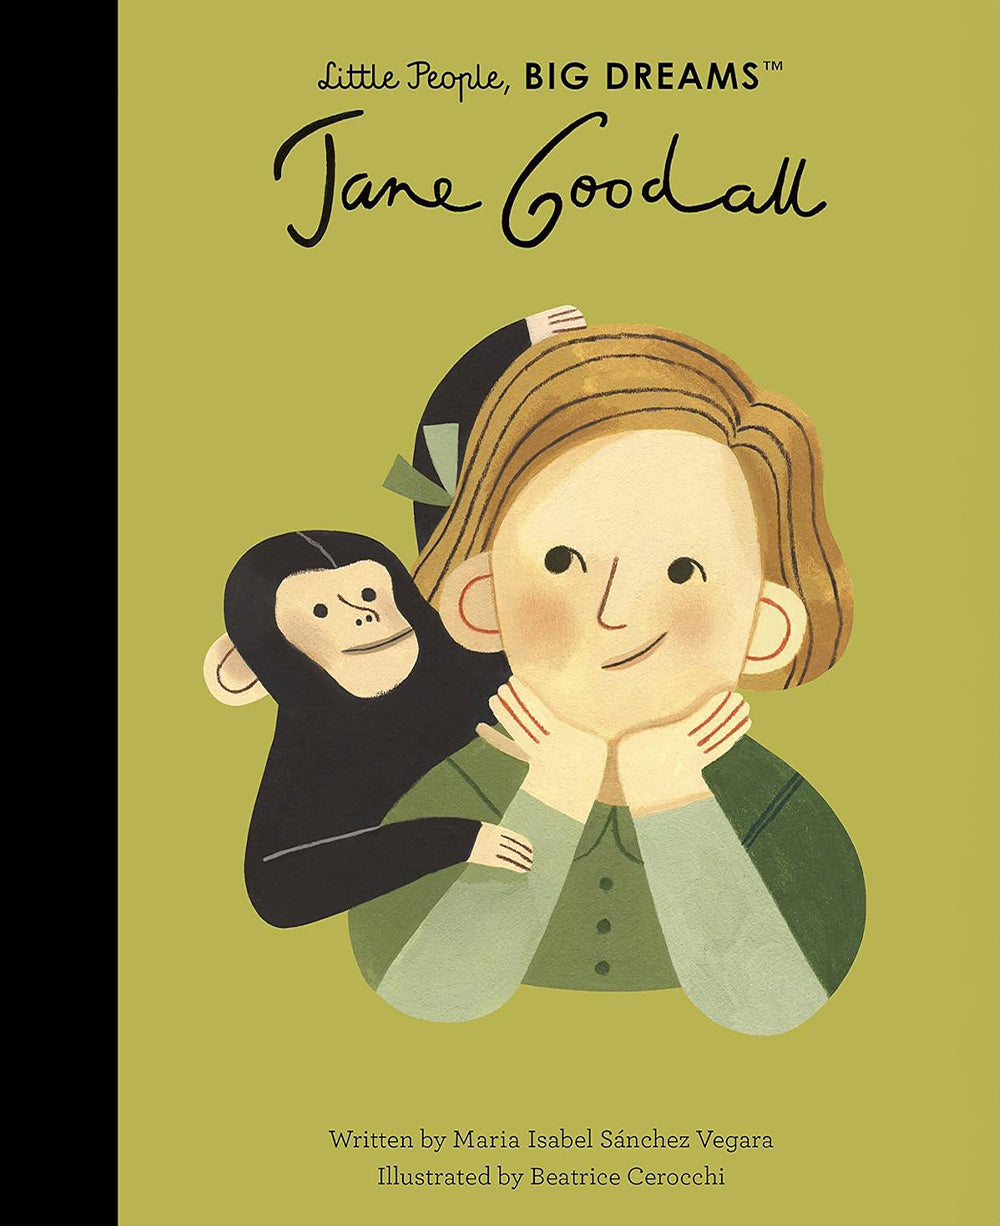 Jane Goodall by Isabella Sanchez Vegara